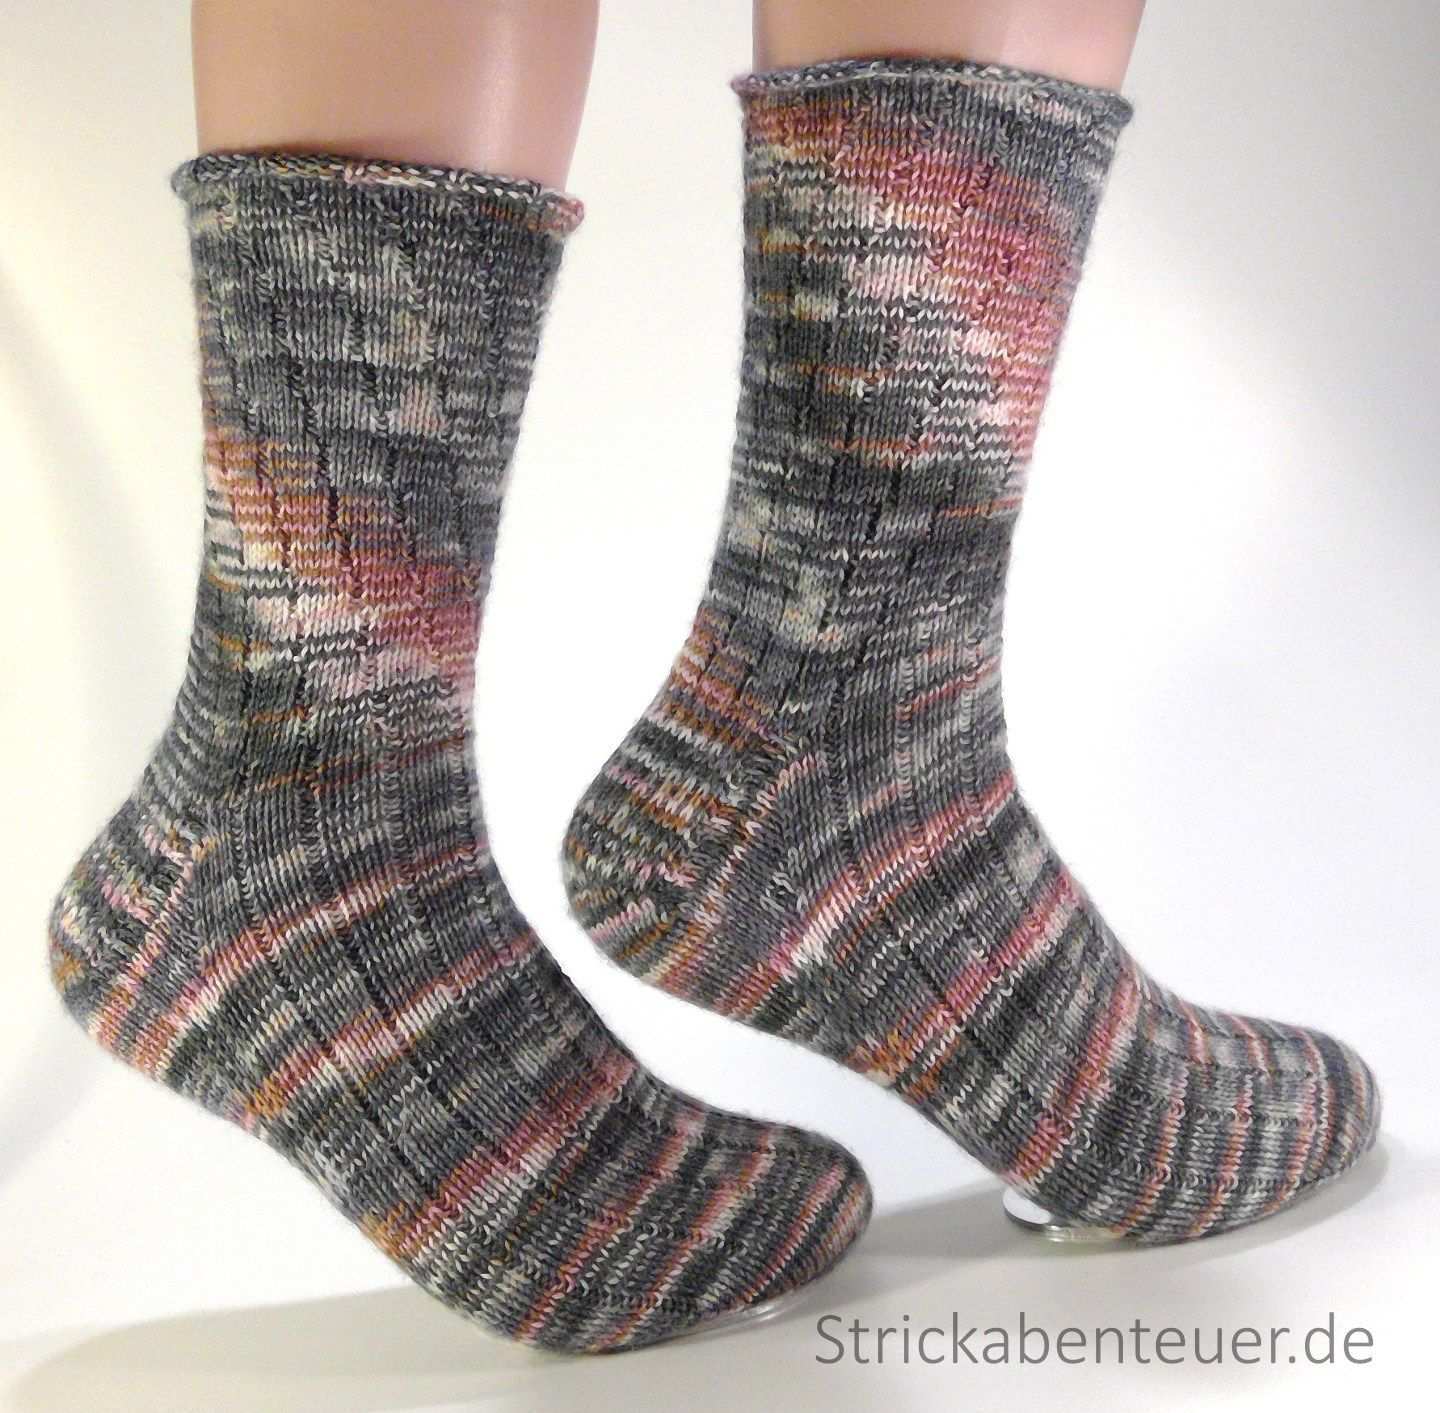 Handgestrickte Socken Muster Stino Wolle Tauschenschon Wilder 10 2016 Socken Socken Stricken Muster Socken Stricken